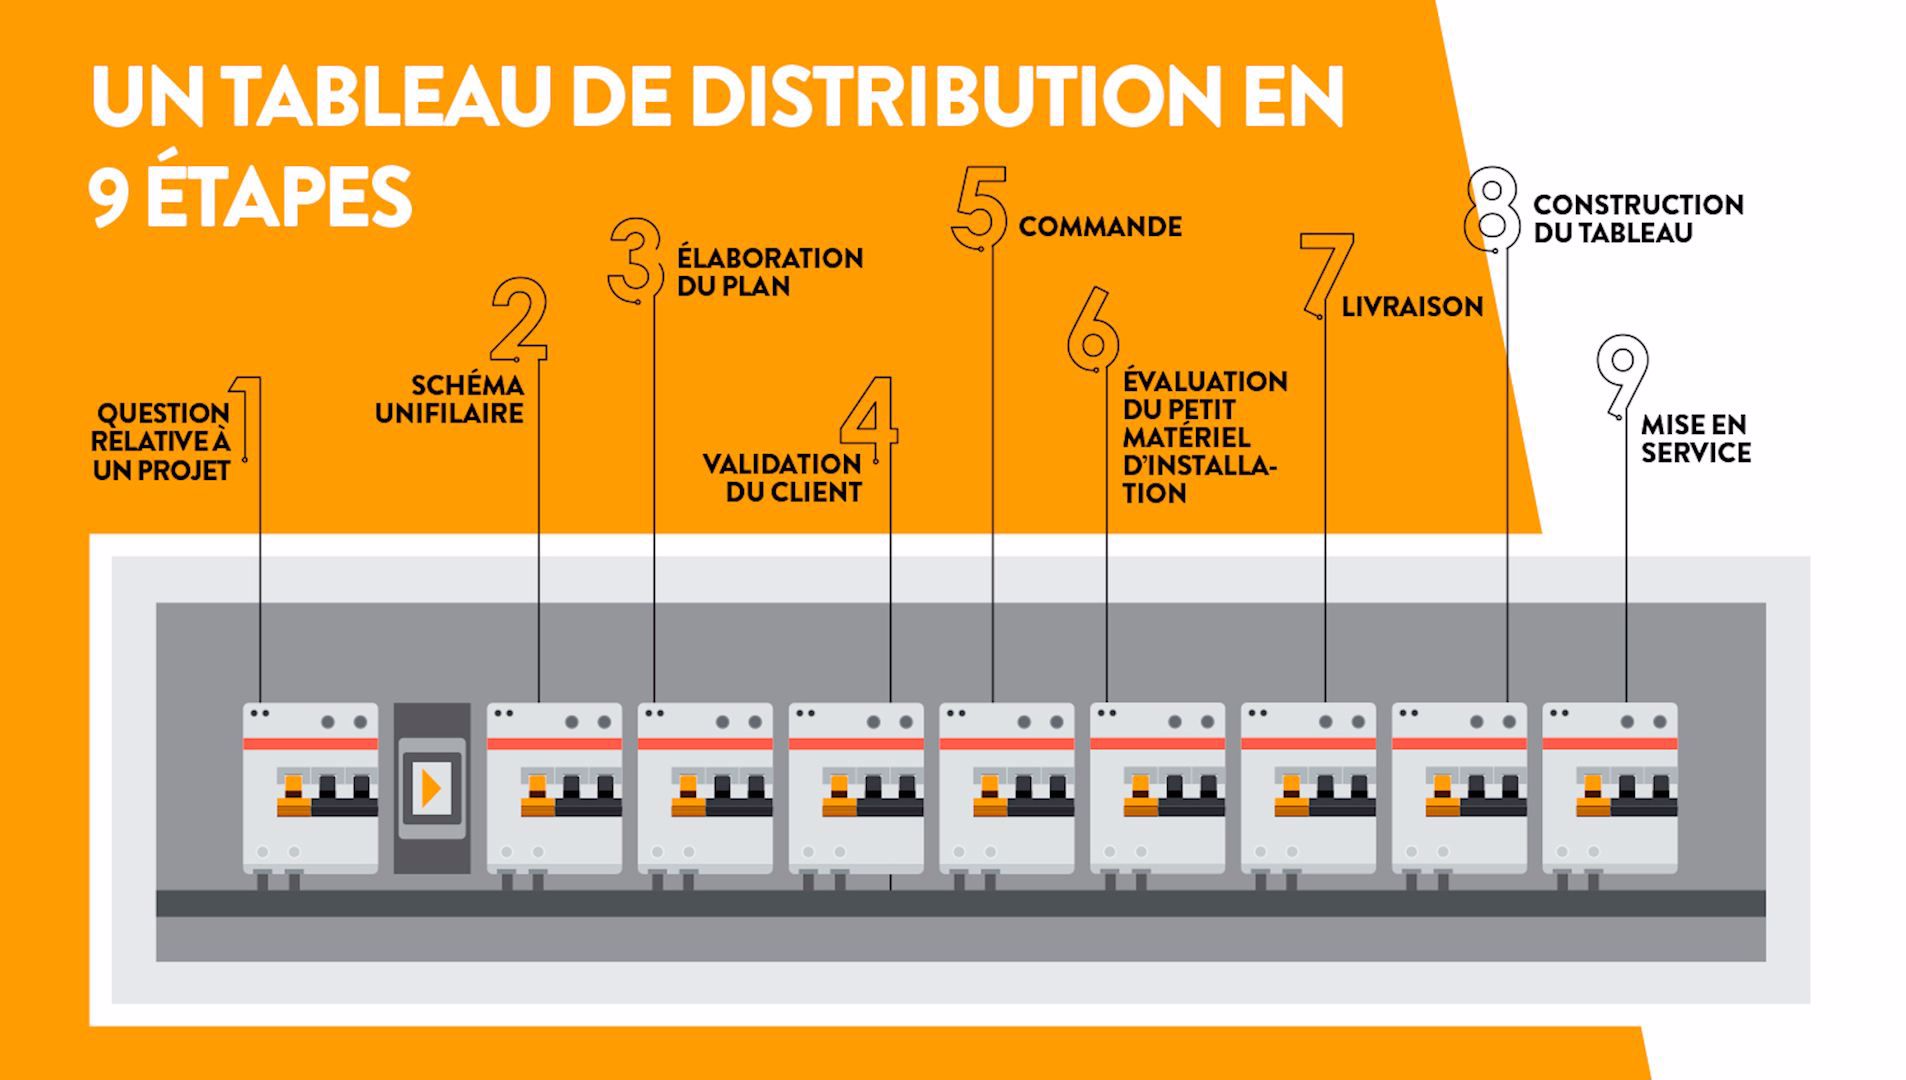 Un tableau de distribution en 9 étapes